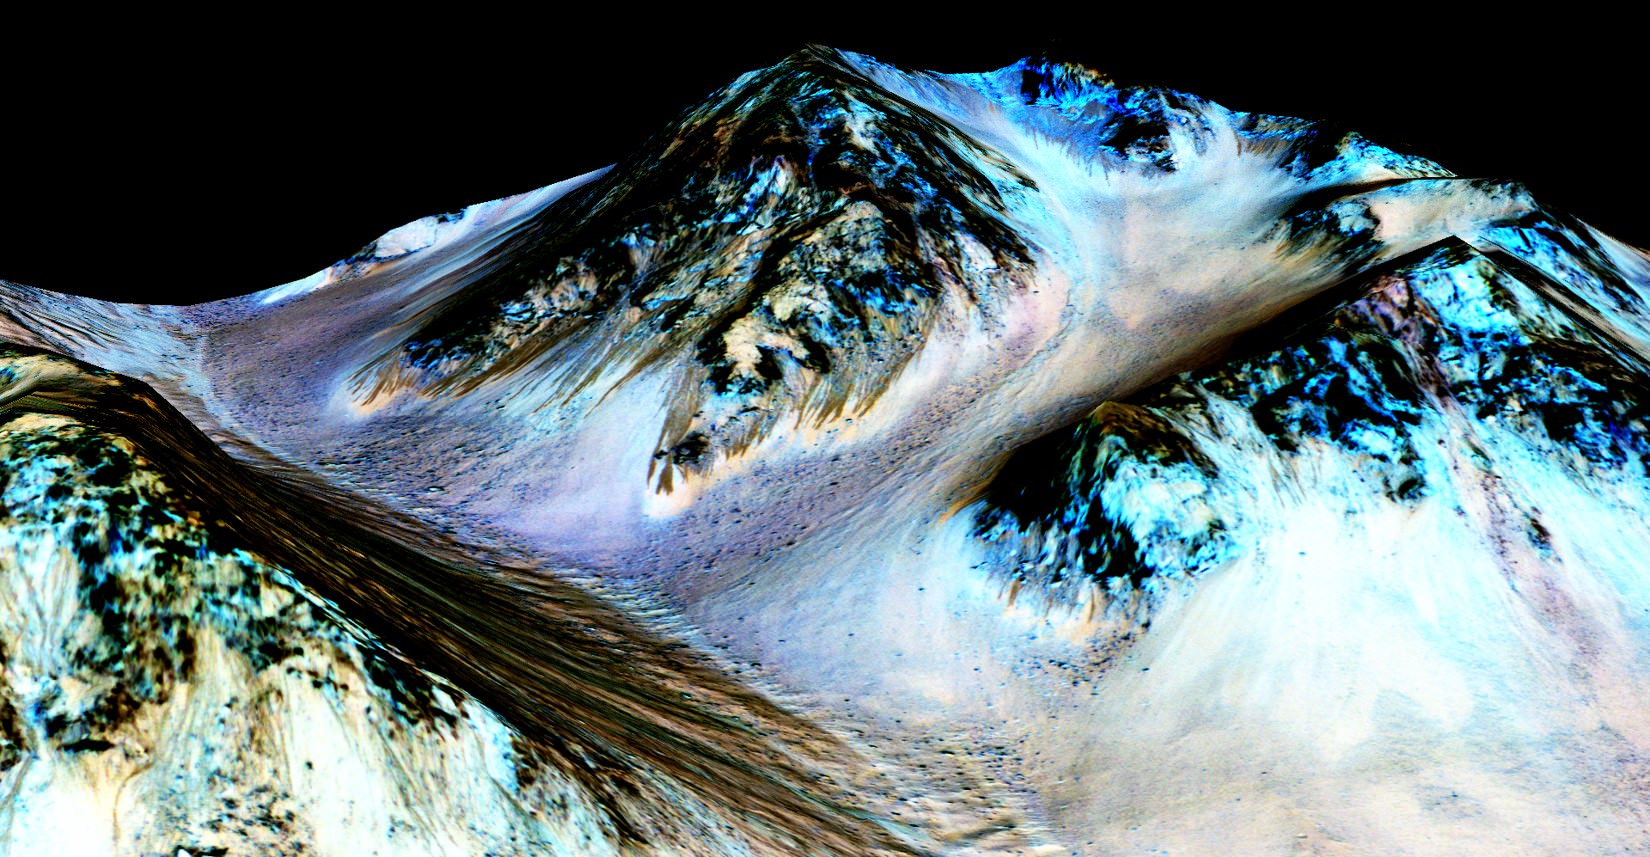 Marte tiene corrientes de arena, no de agua salada